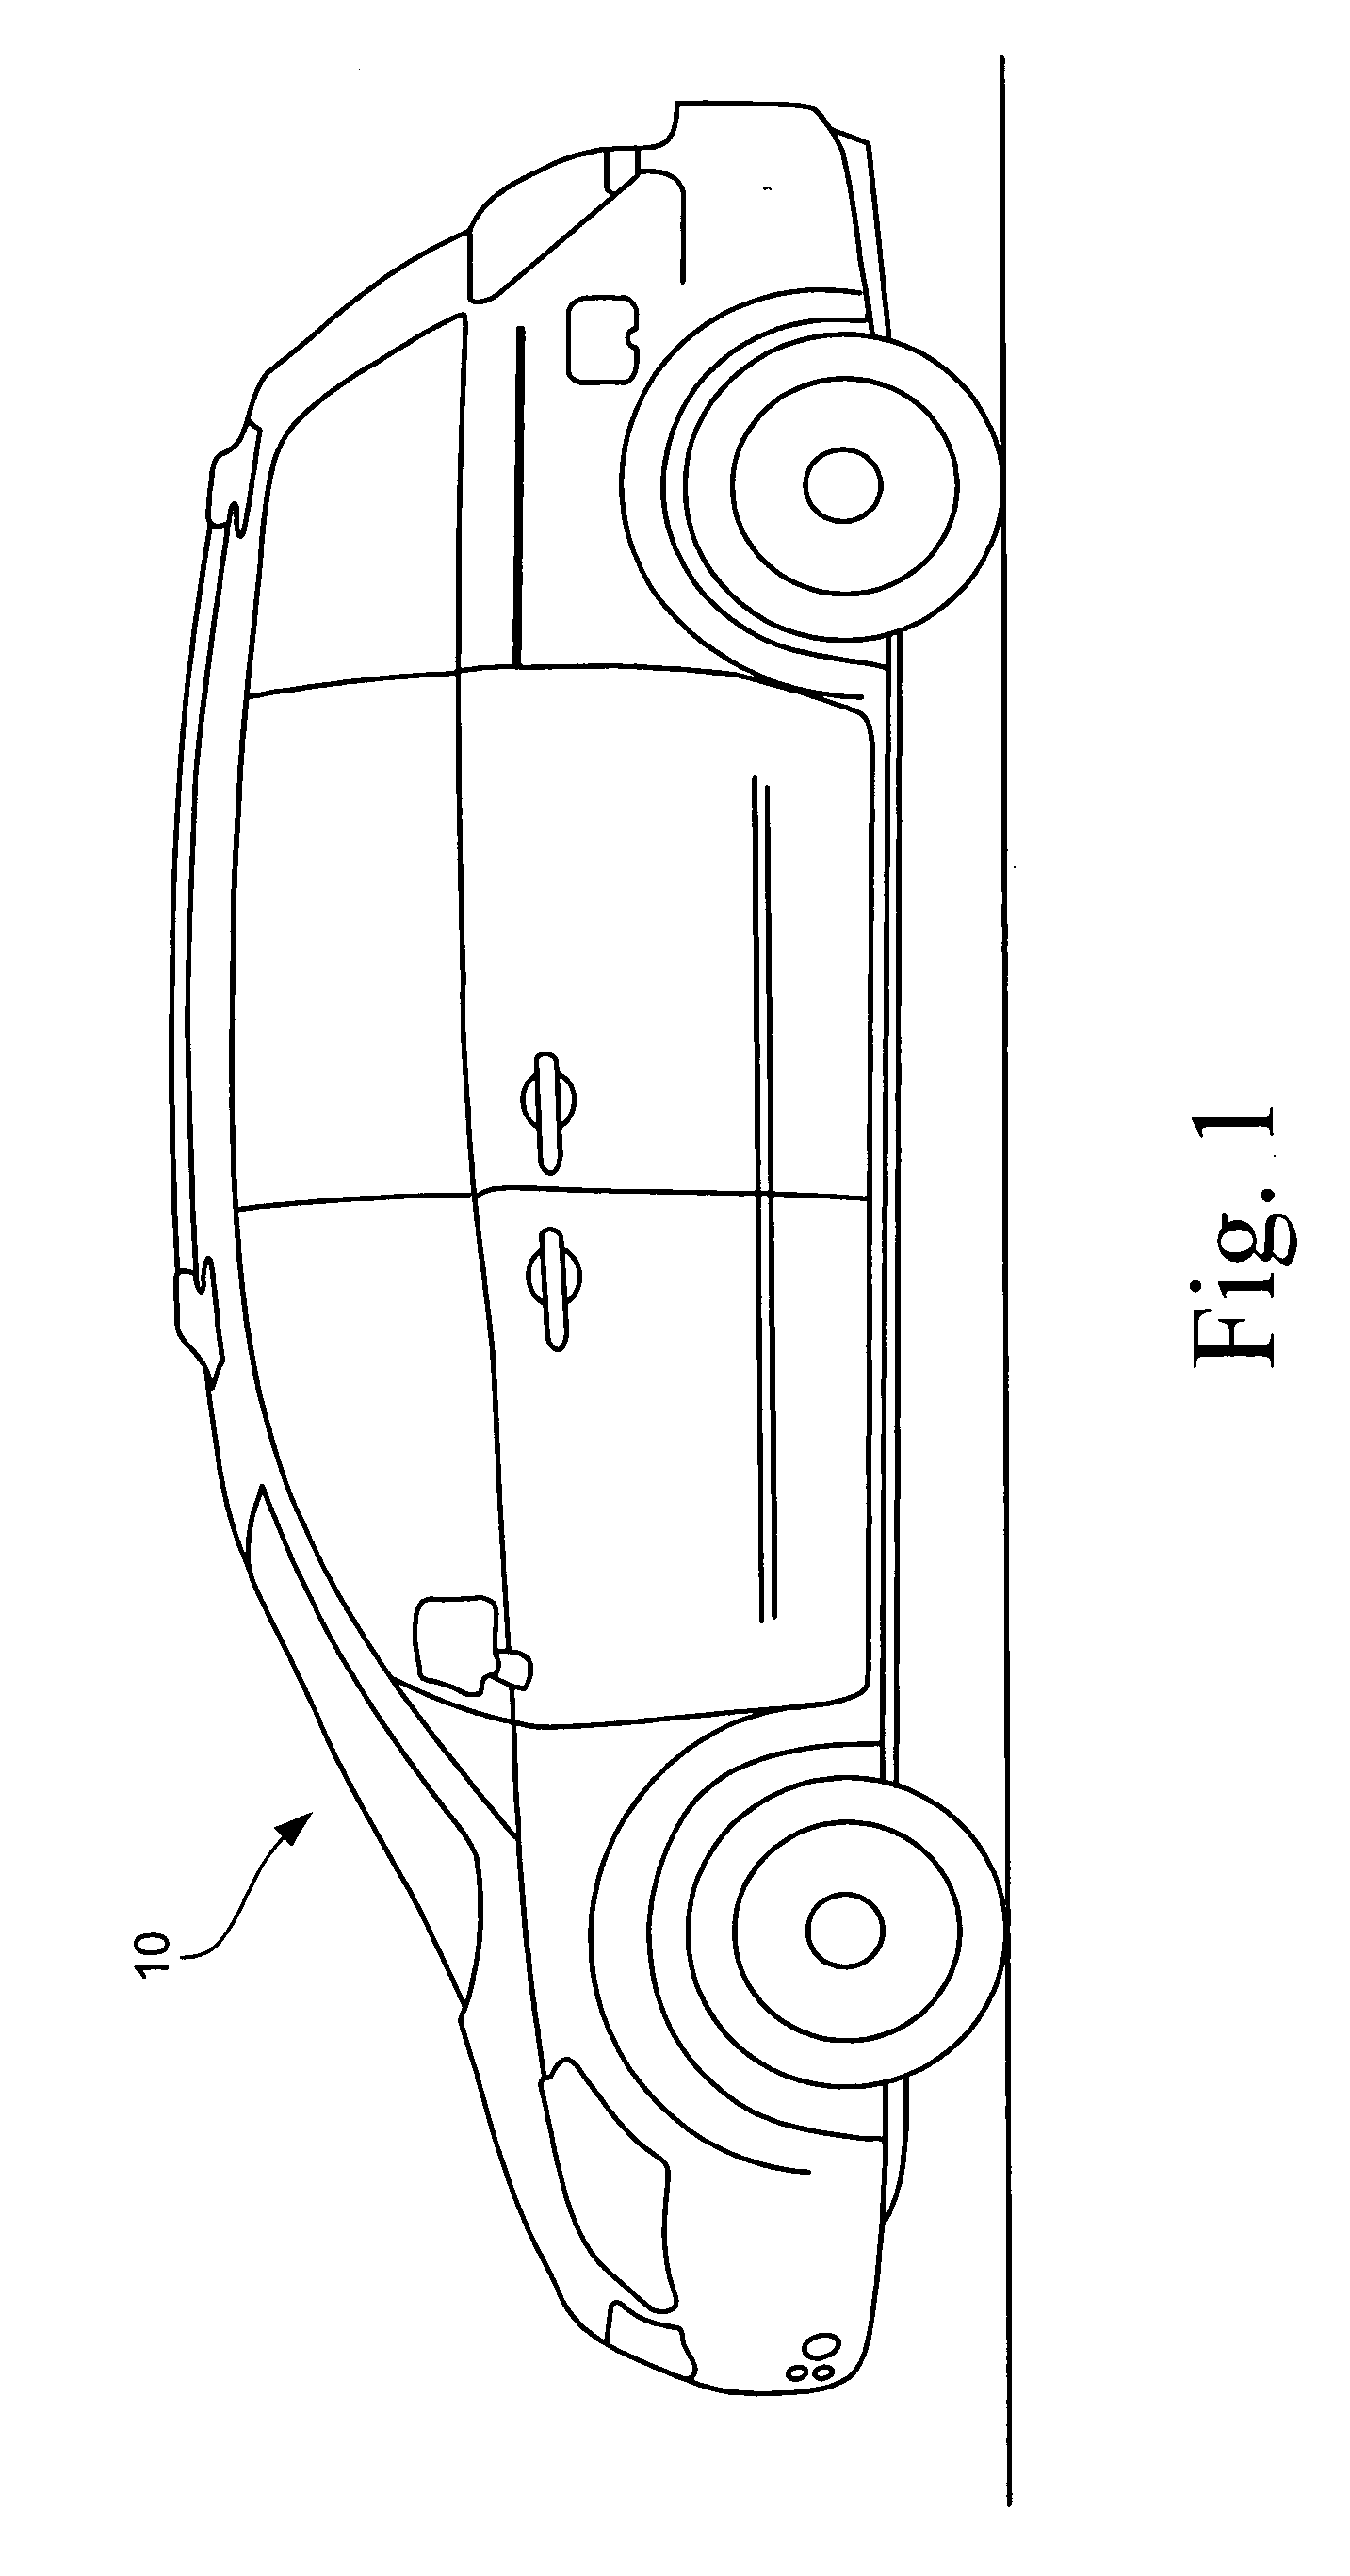 Vehicle storage structure